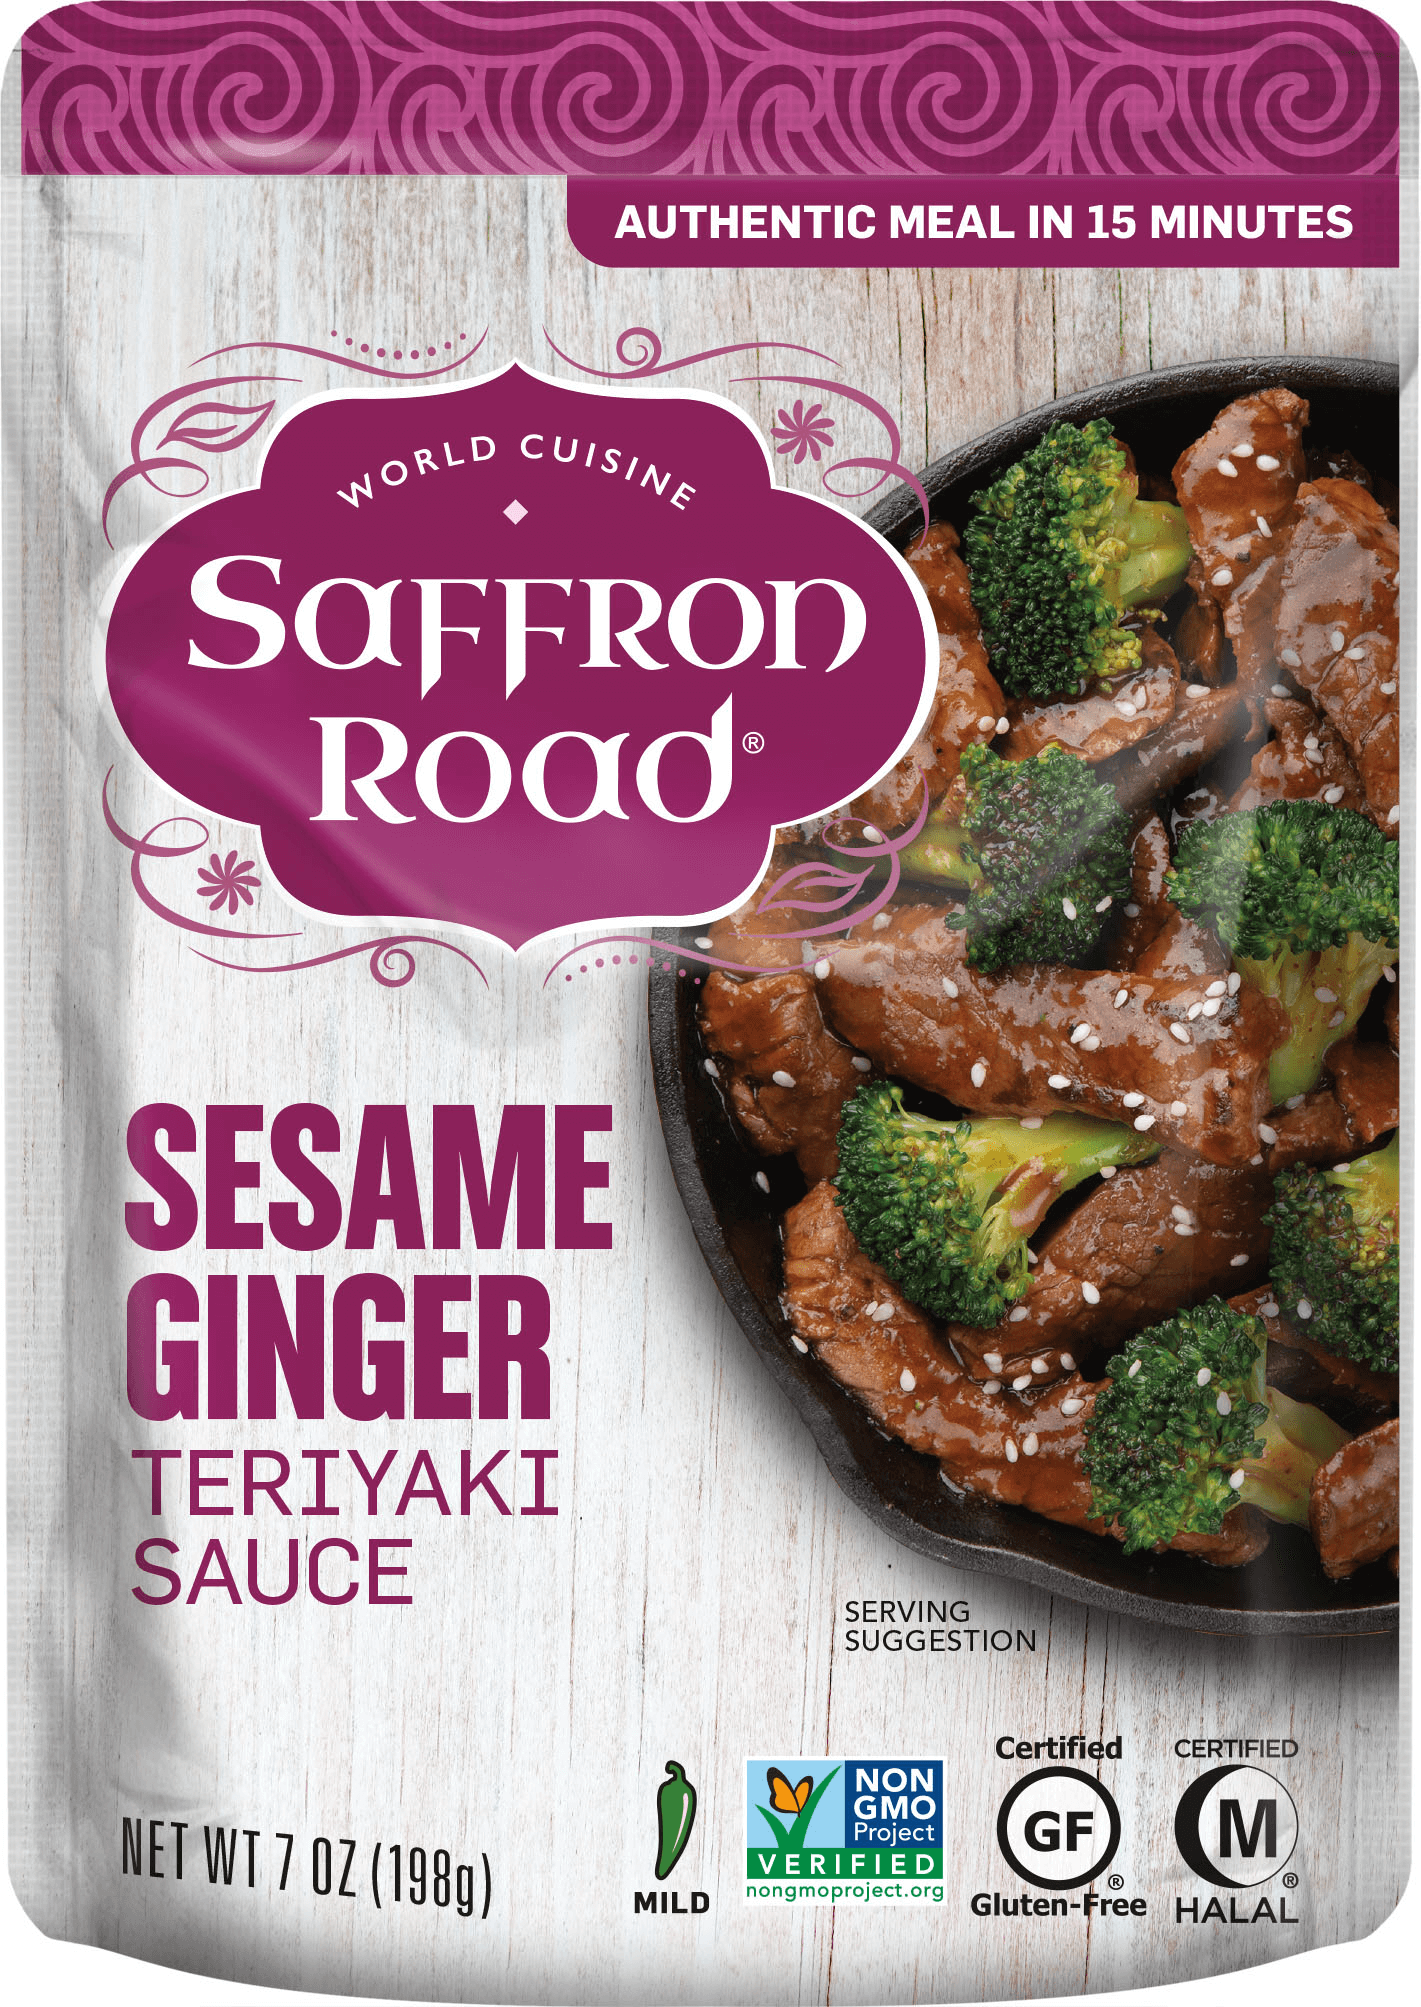 Sesame Ginger Simmer Sauce